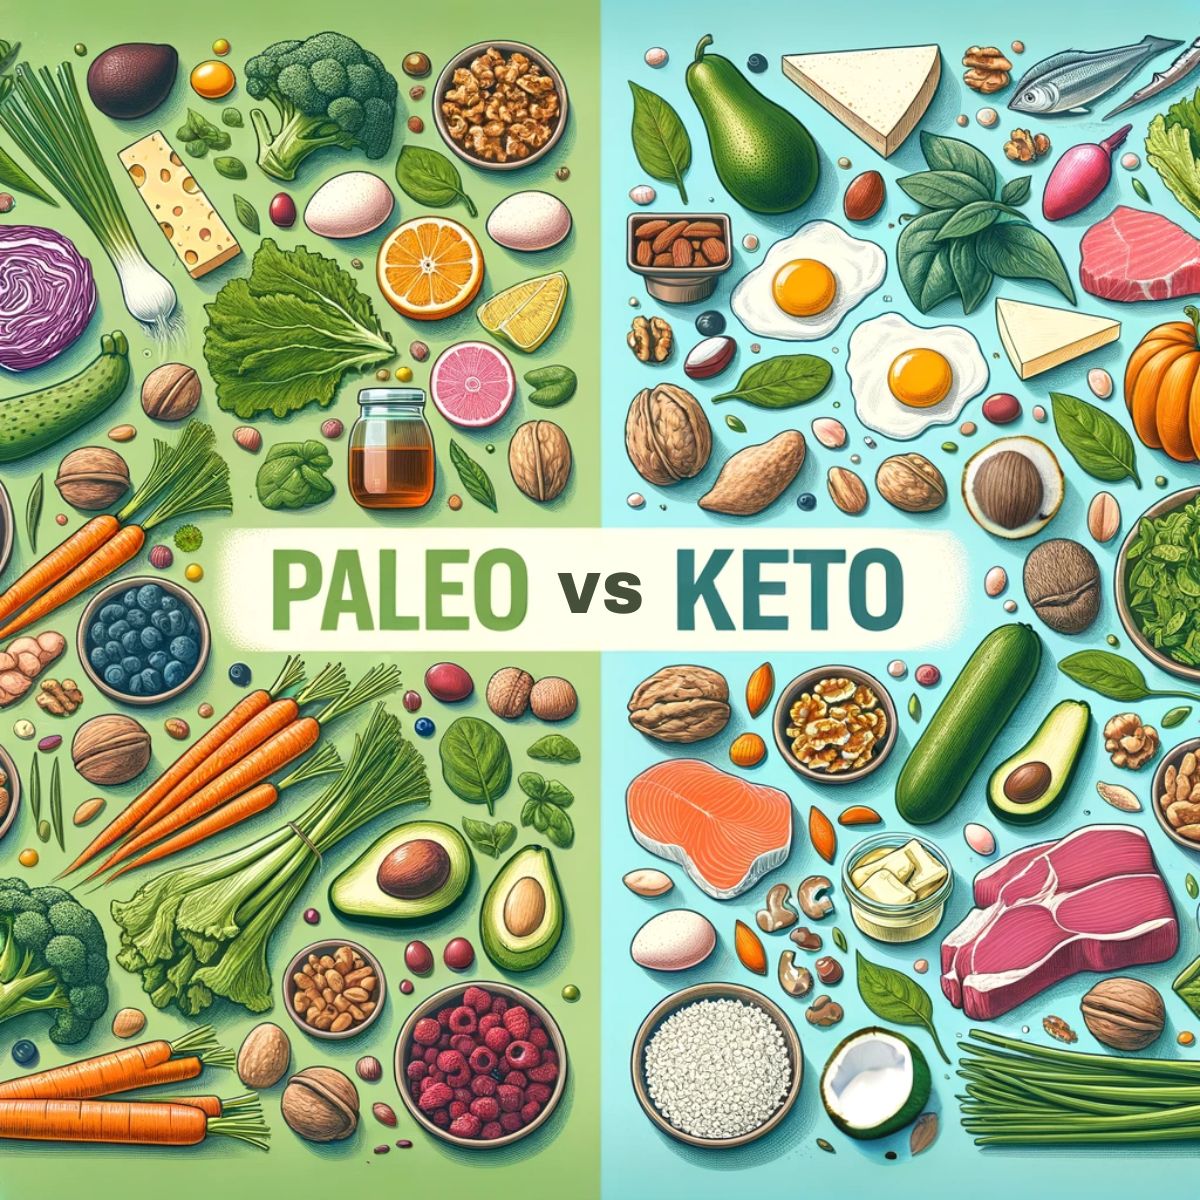 Paleo vs Keto: A Visual Comparison